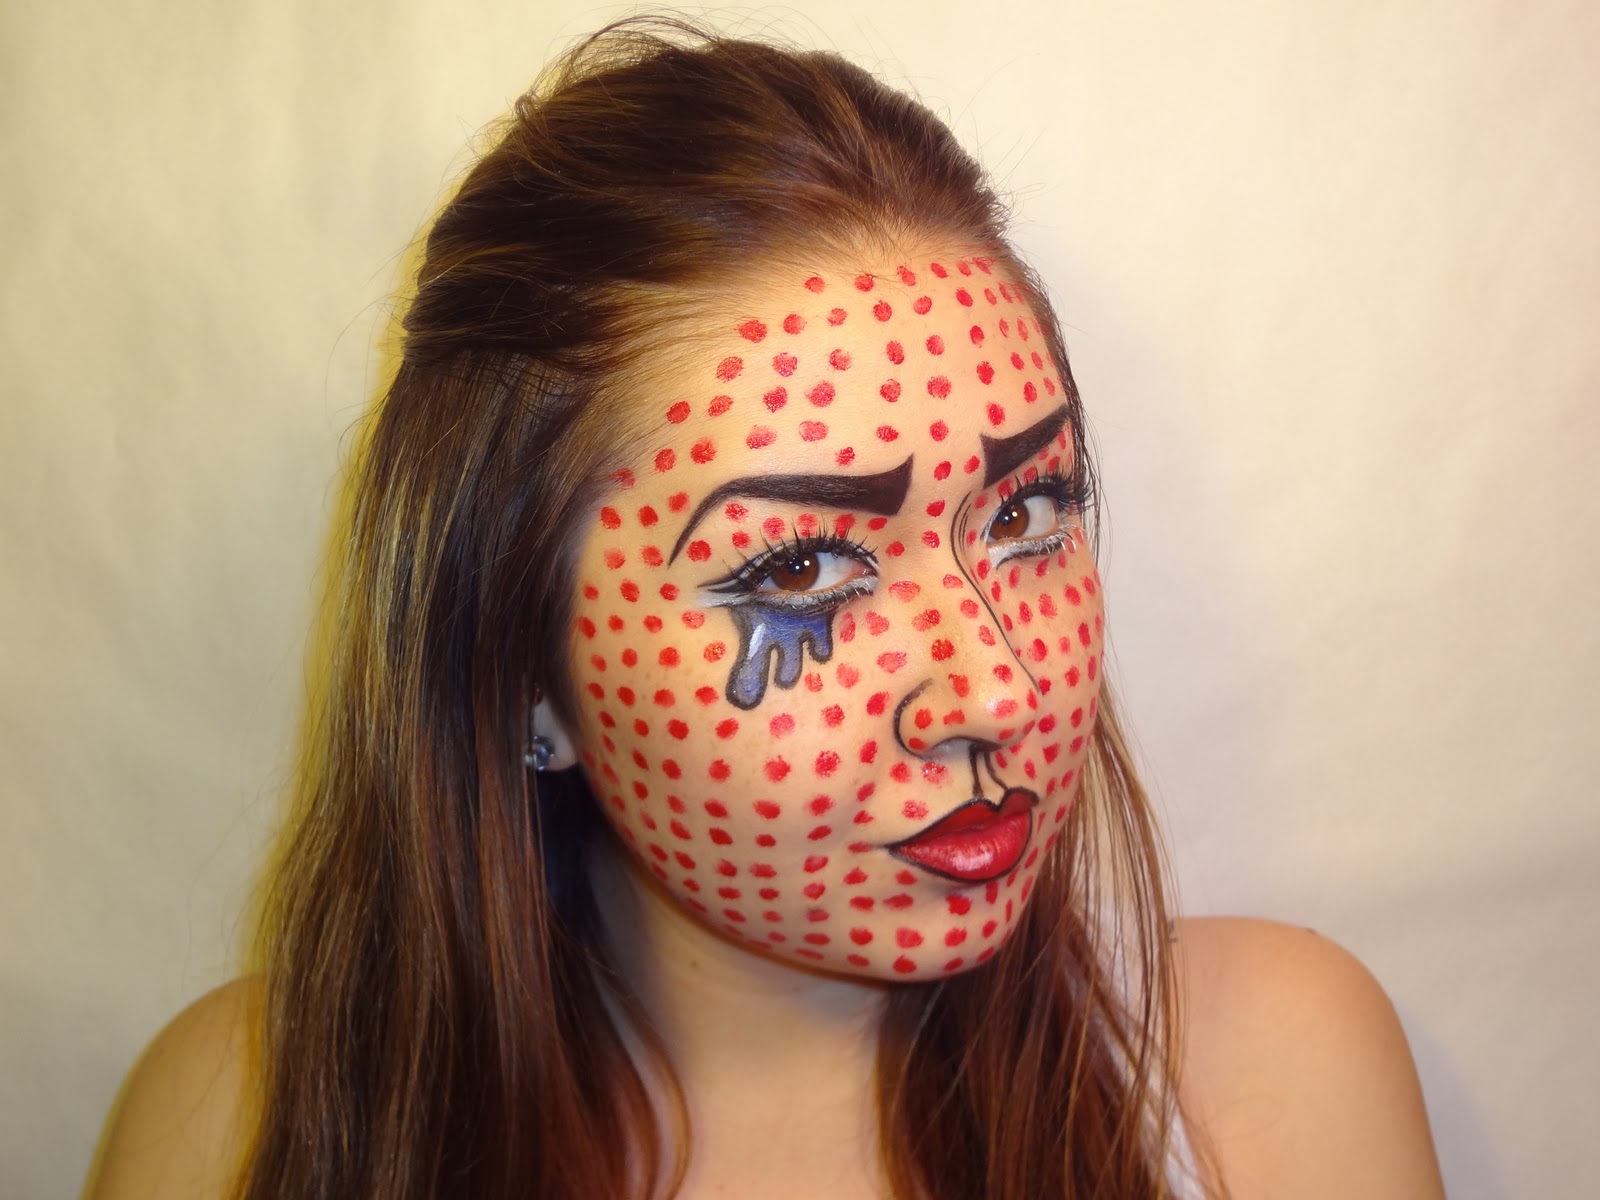 Make Up Art By Elle: Video: Roy Lichtenstein Inspired Make-Up Look